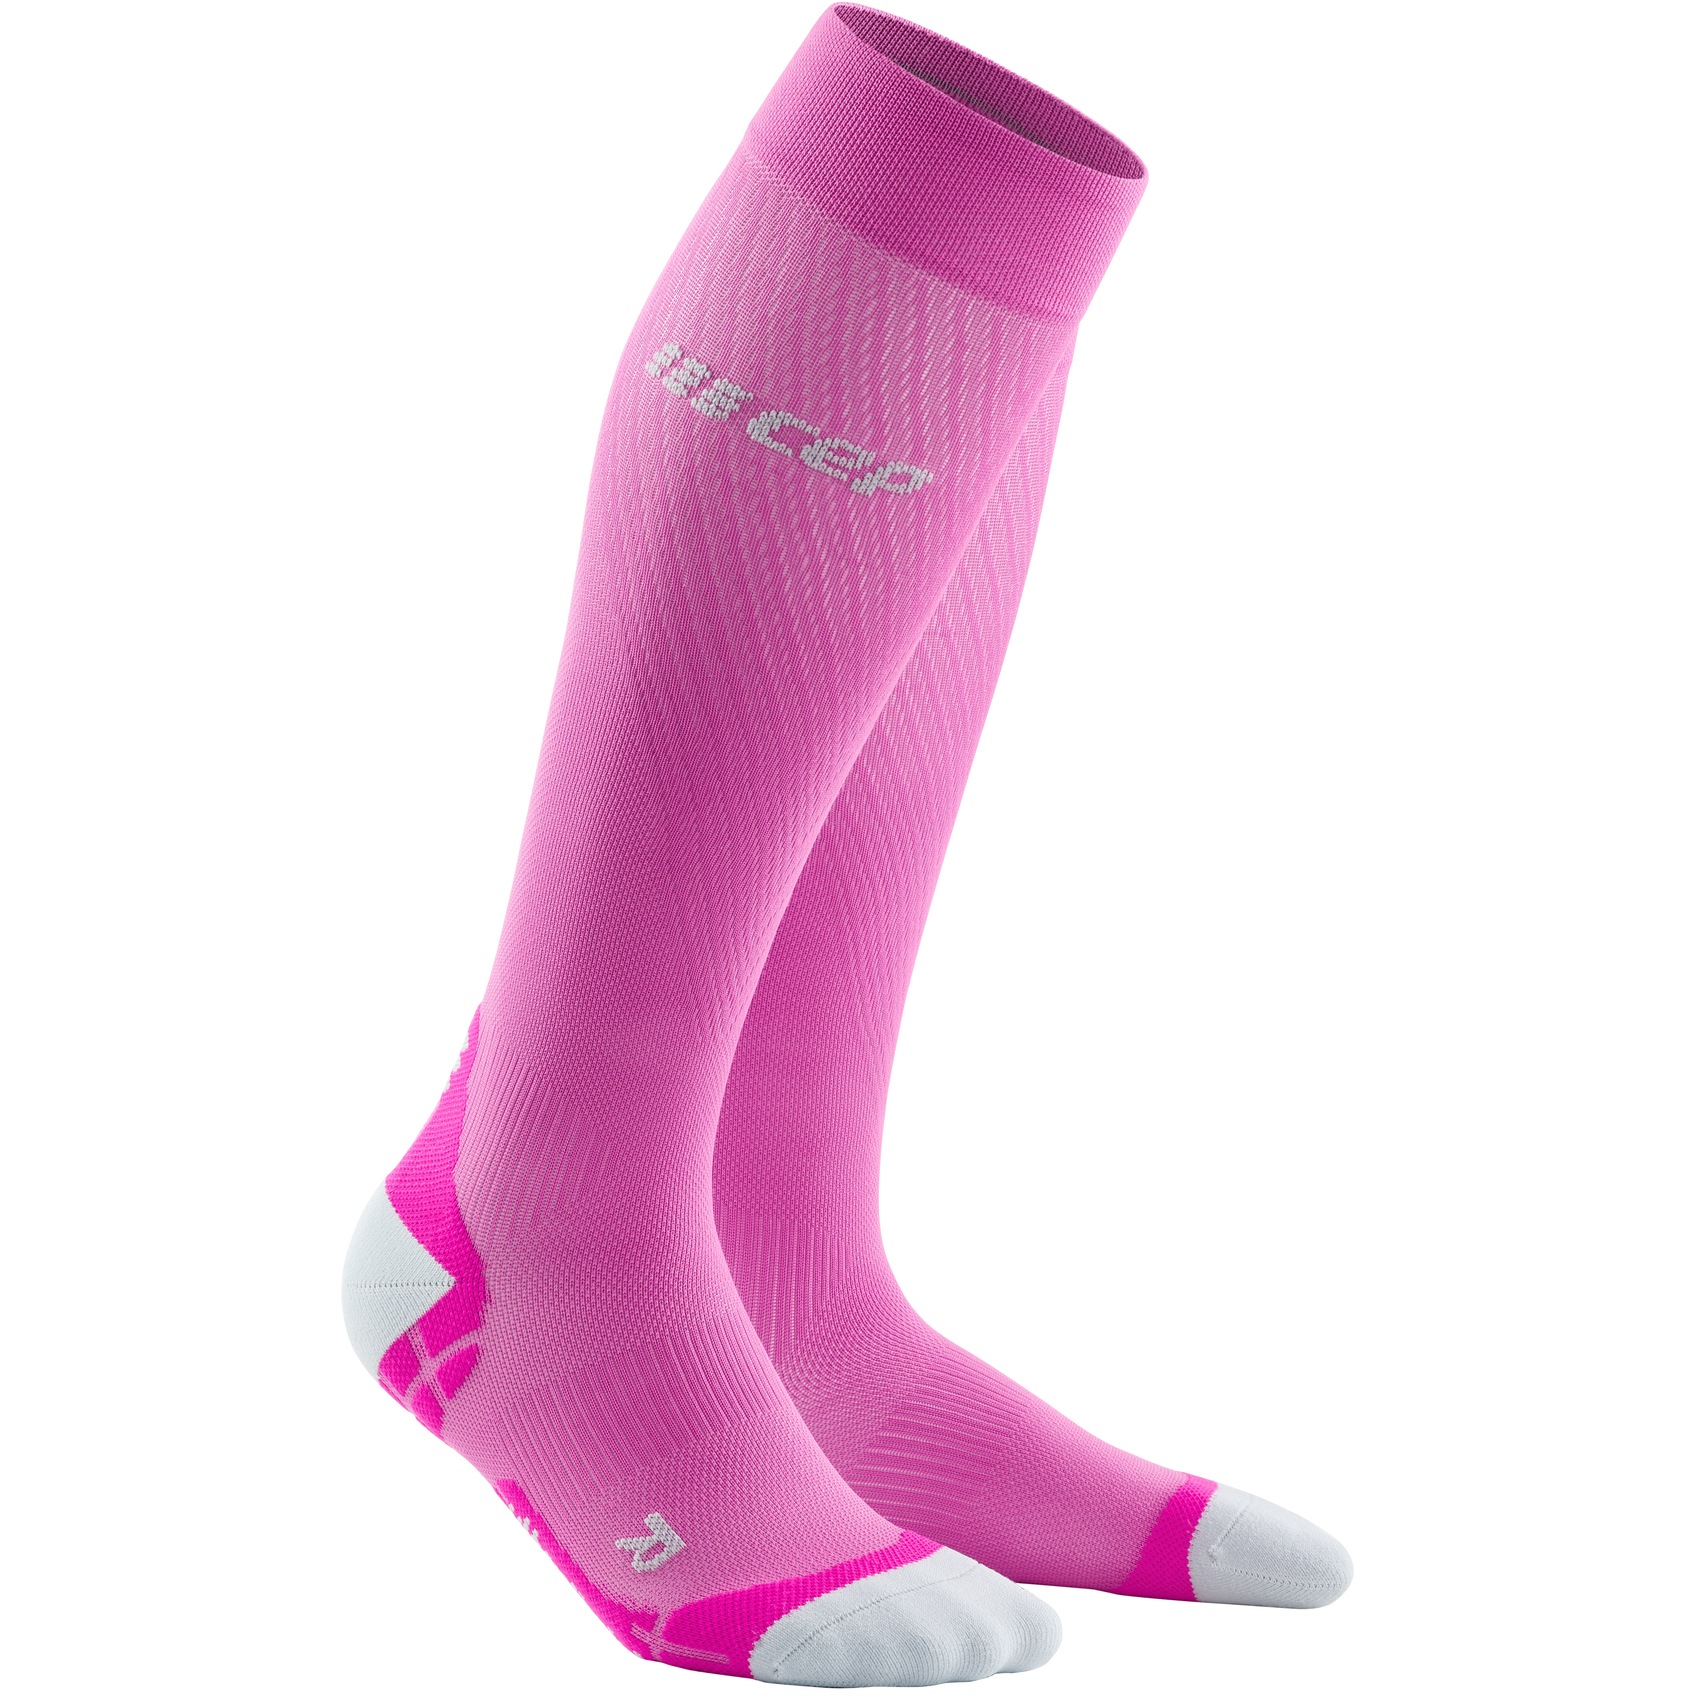 Produktbild von CEP Run Ultralight Kompressionssocken Damen - pink/light grey